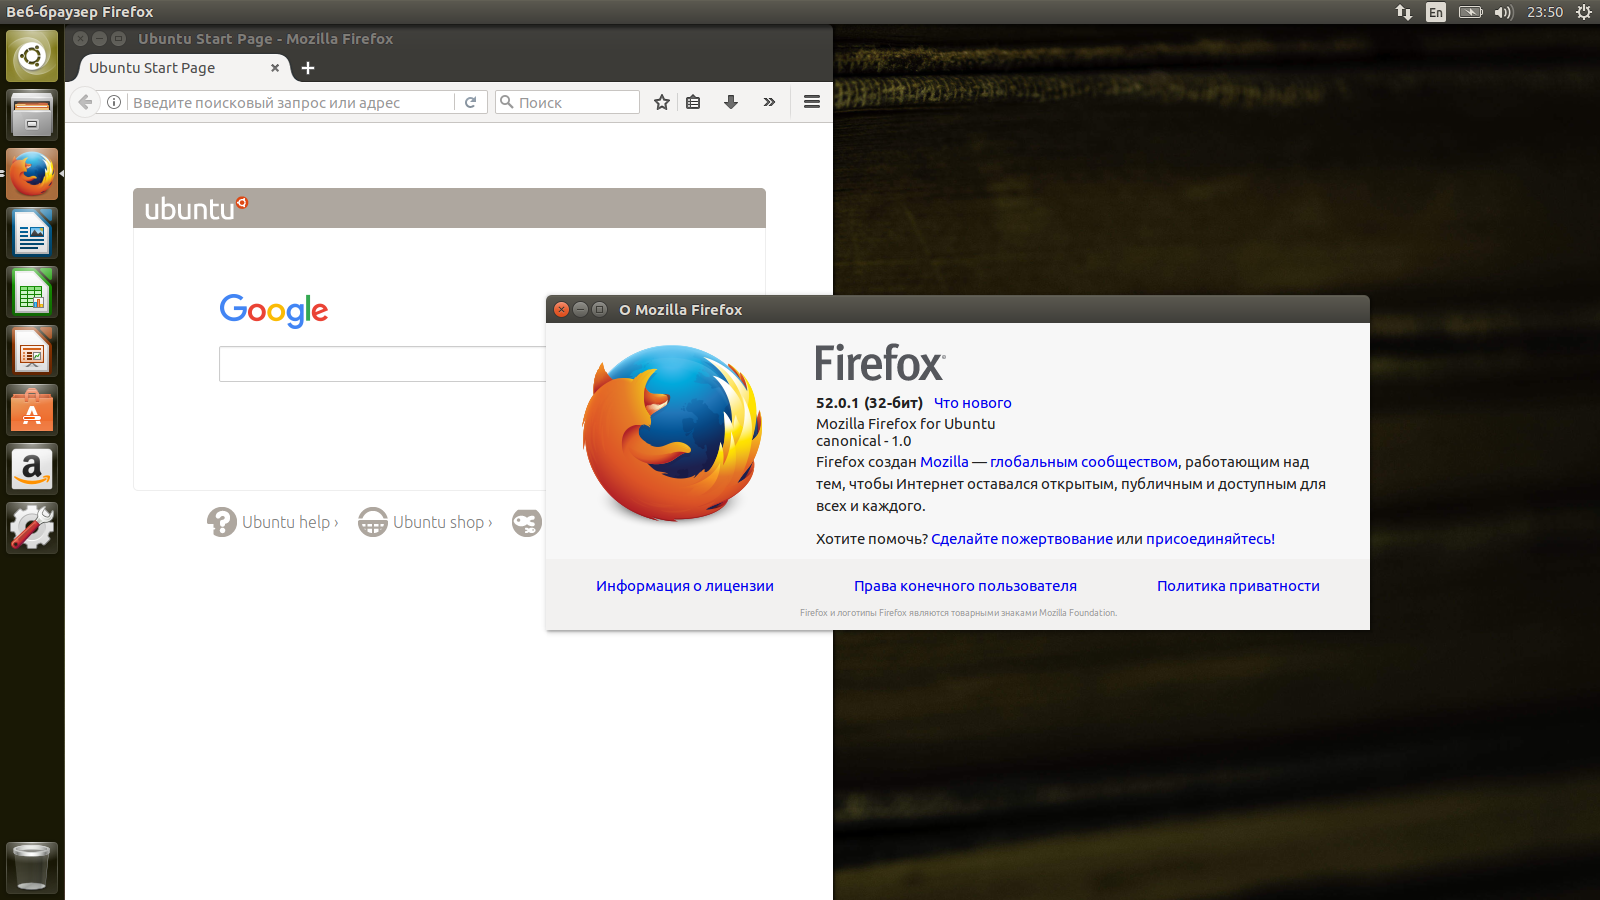 Ubuntu 17.04 Zesty Zapus Firefox 52